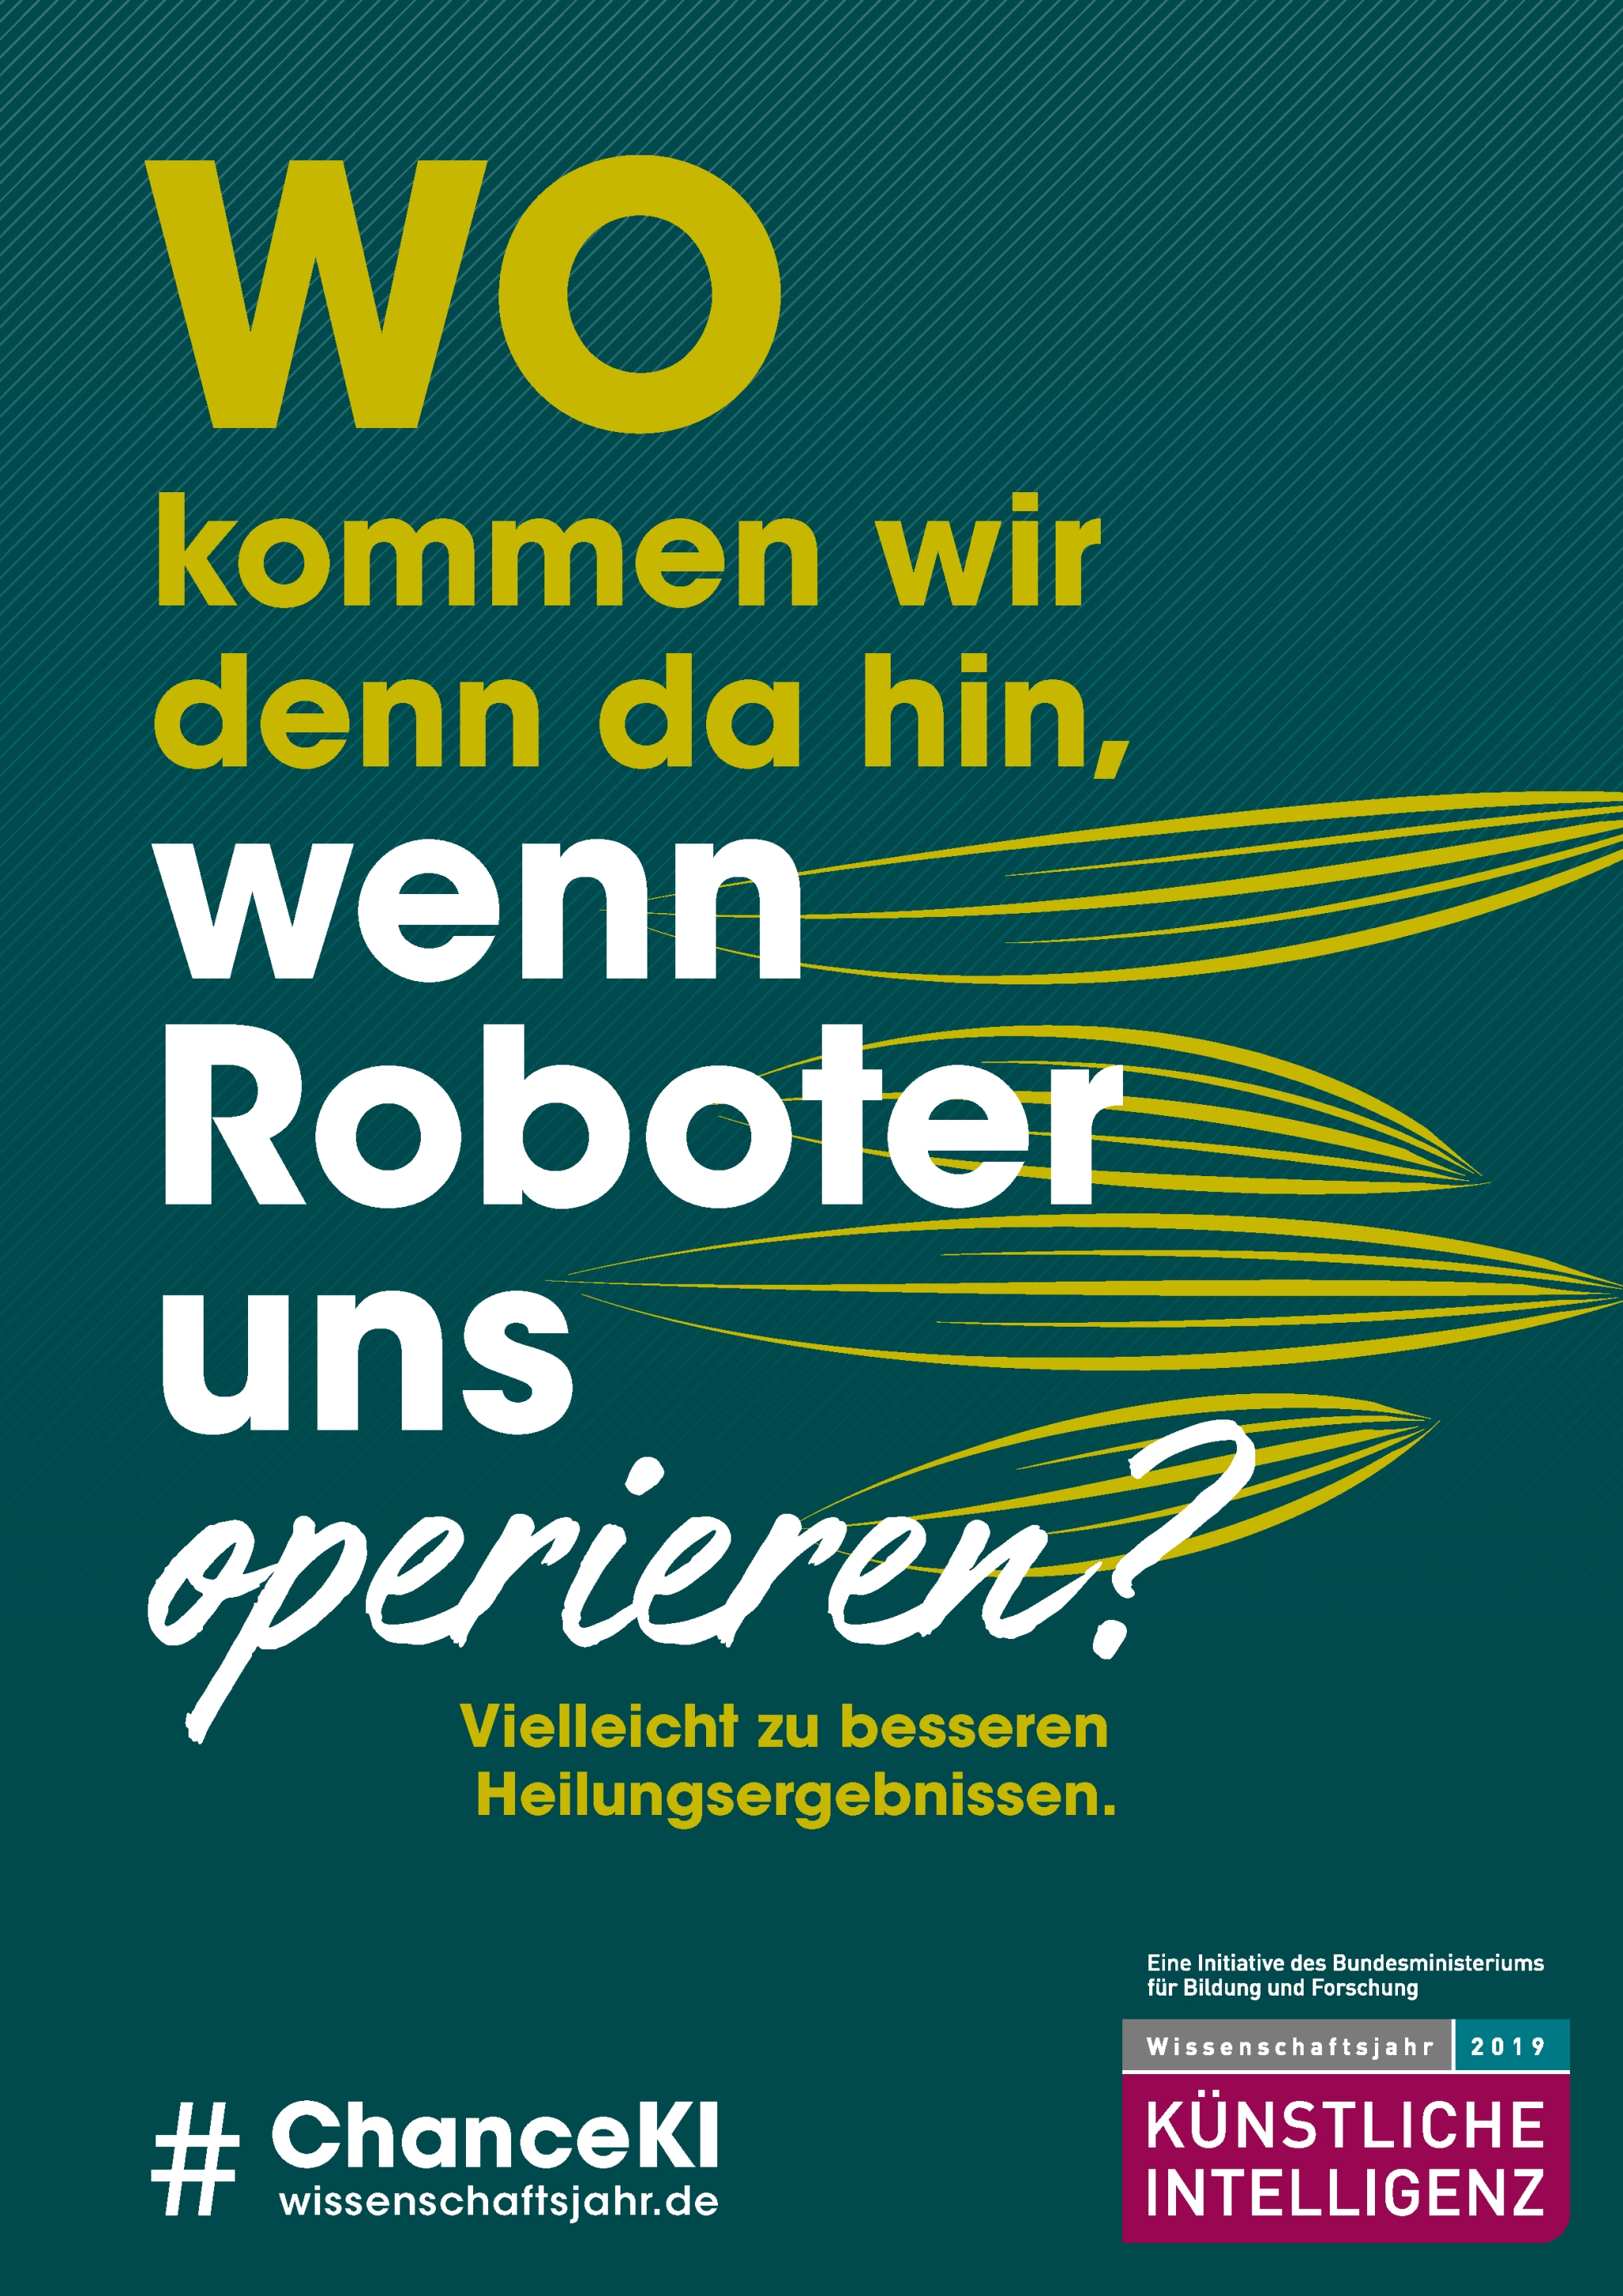 Das Logo des Wissenschaftsjahres und ein Motiv mit der Aufschrift „Wo kämen wir denn da hin, wenn Roboter uns operieren? Vielleicht zu besseren Heilungsergebnissen“.